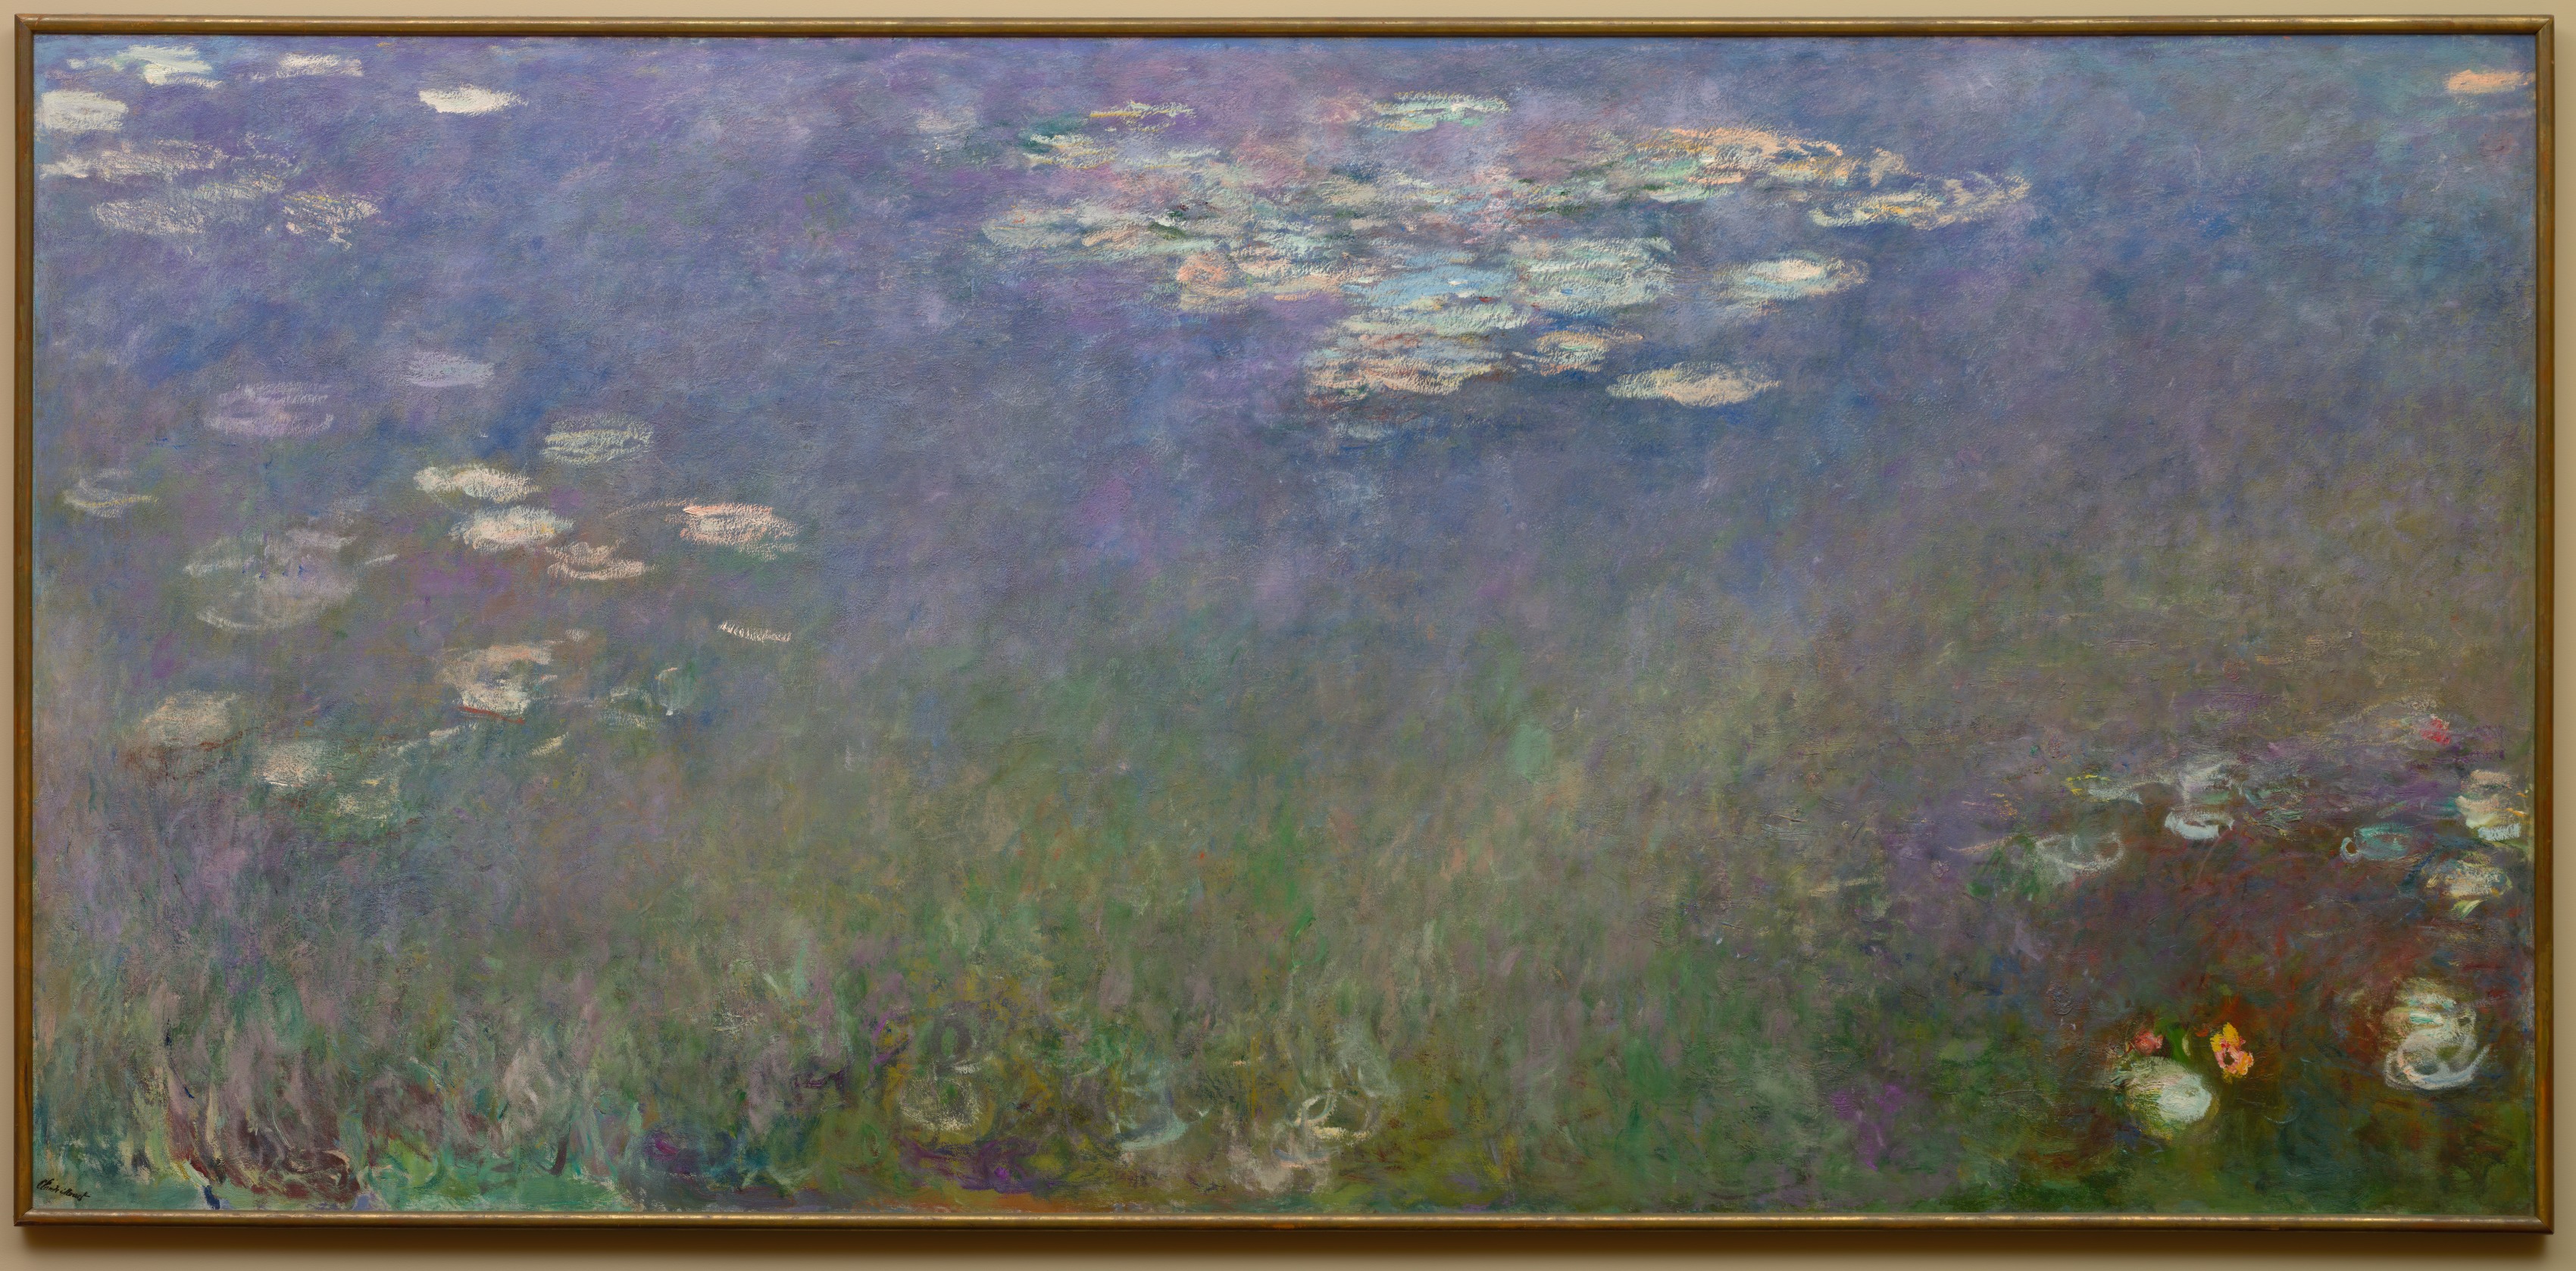 수련 by Claude Monet - 1915-26년경 - 201.3 x 425.6 cm 